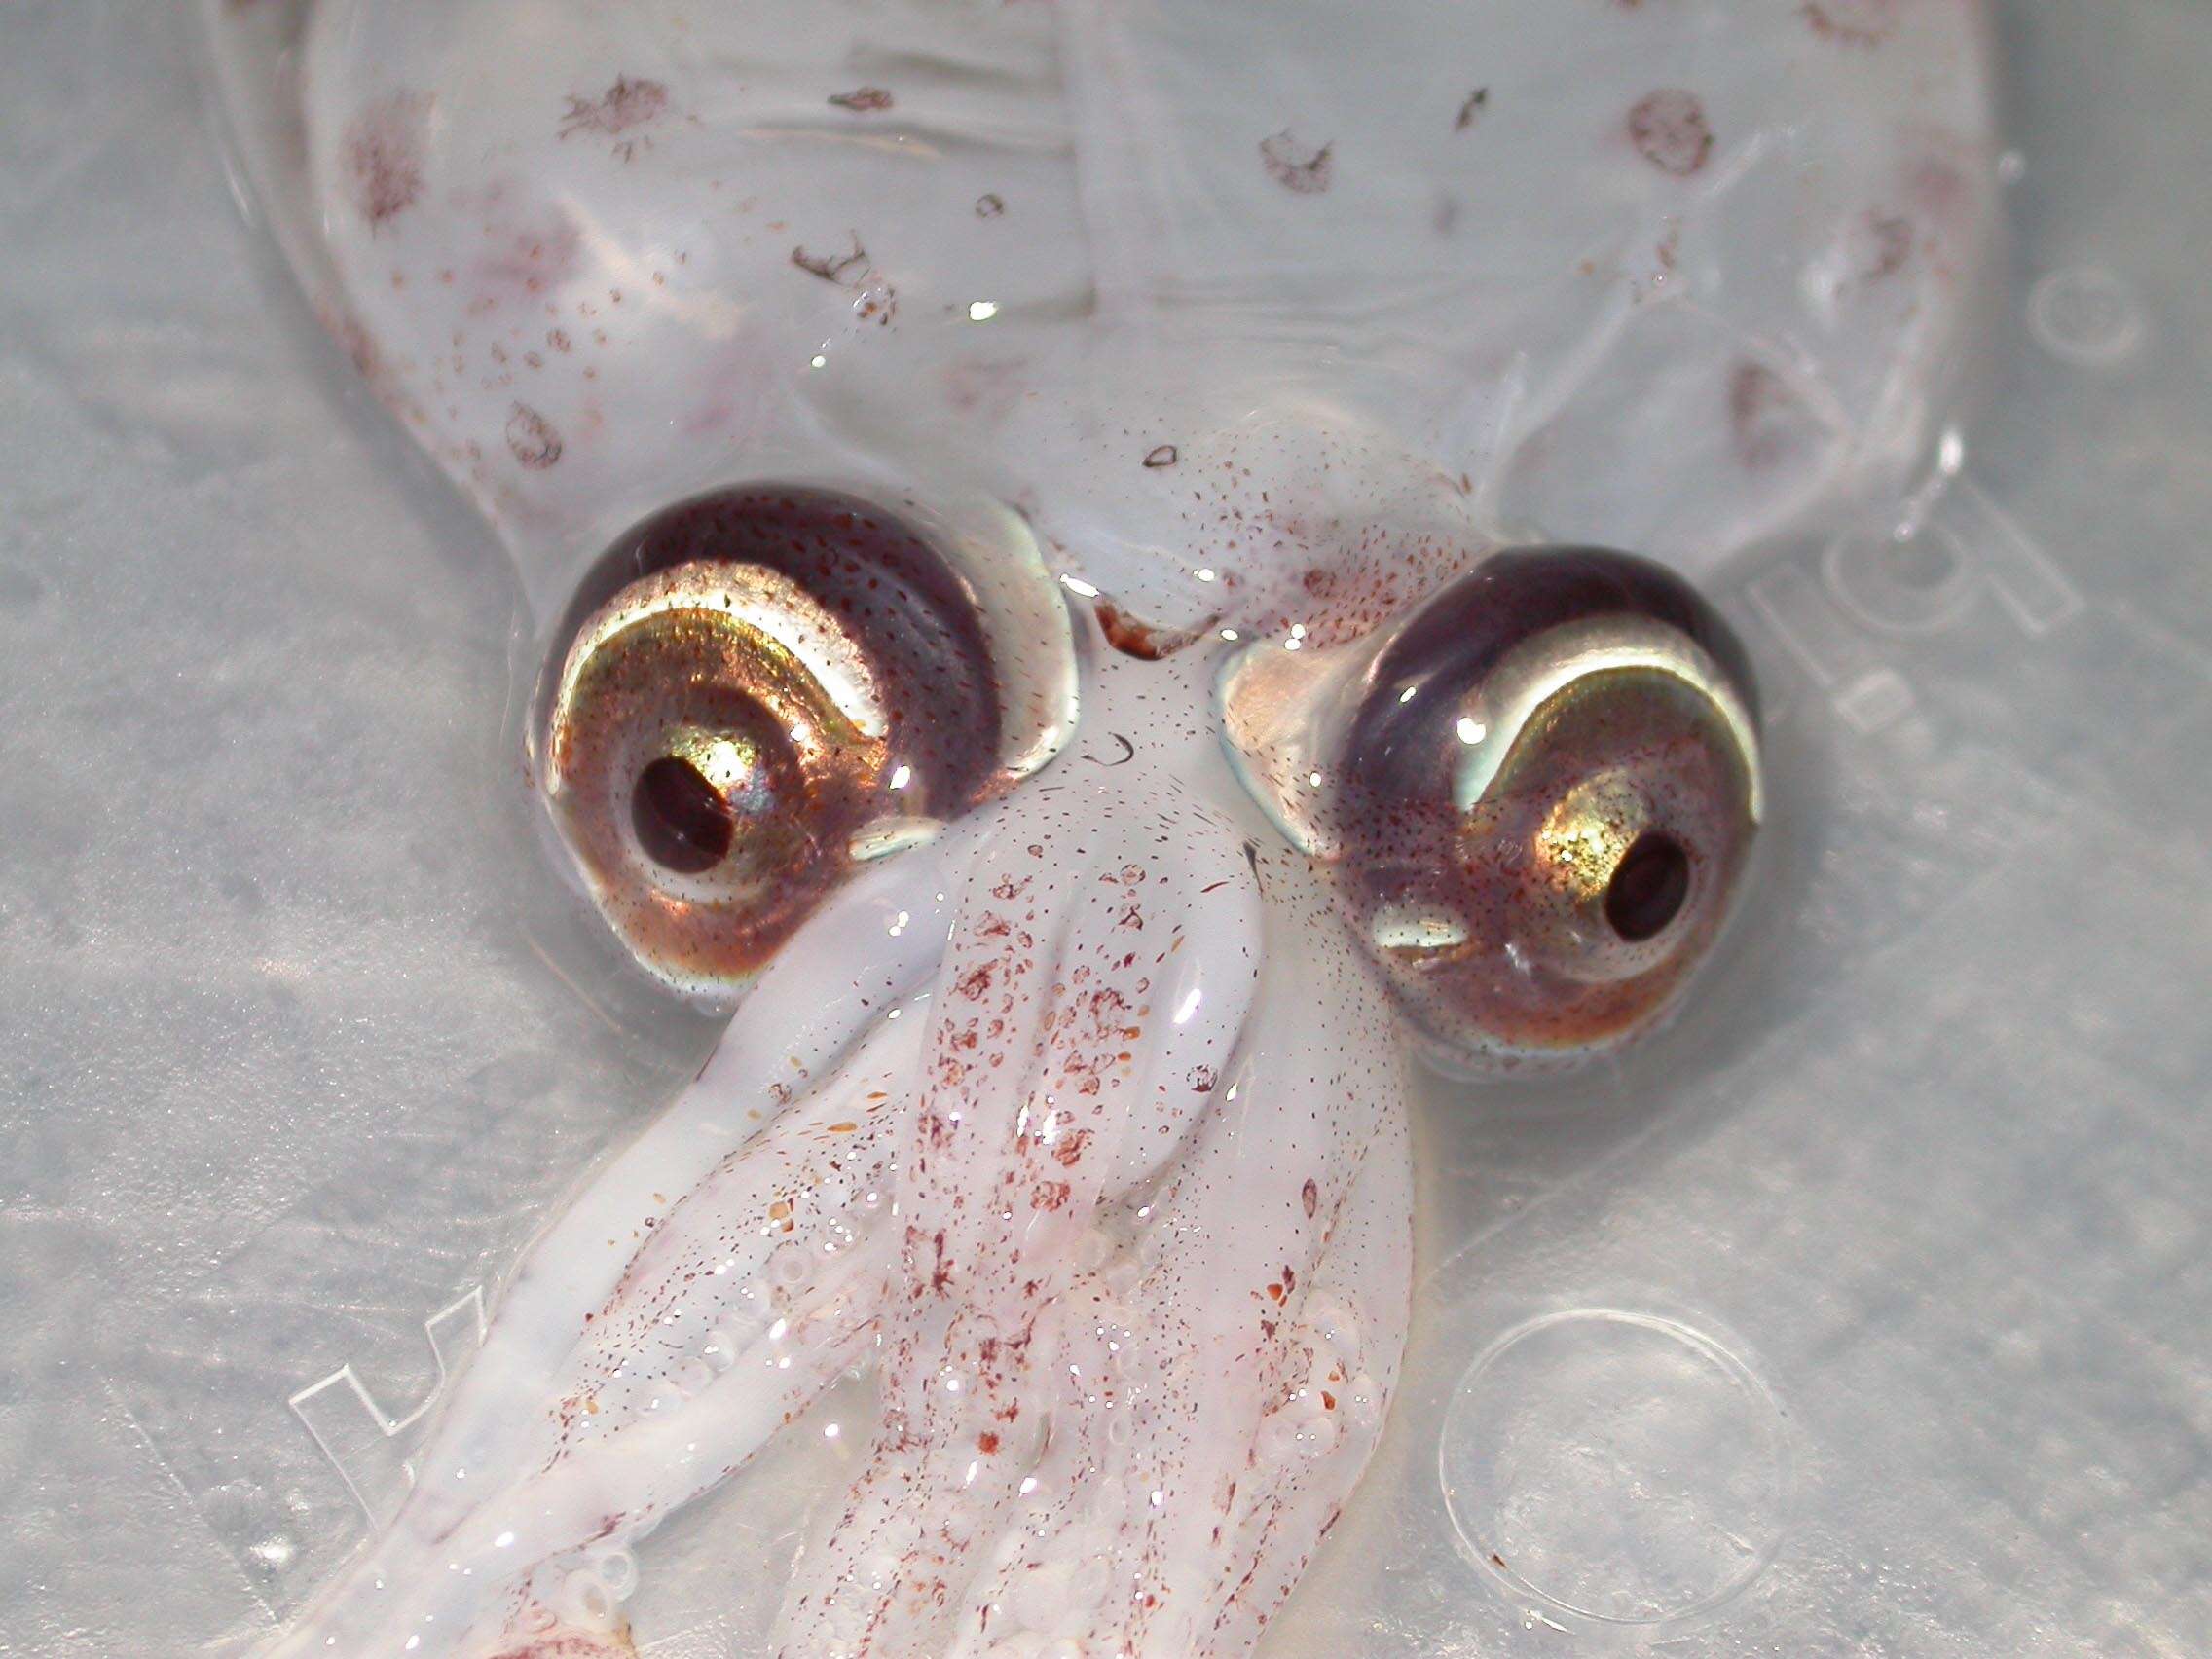 Image of Atlantic cranch squid